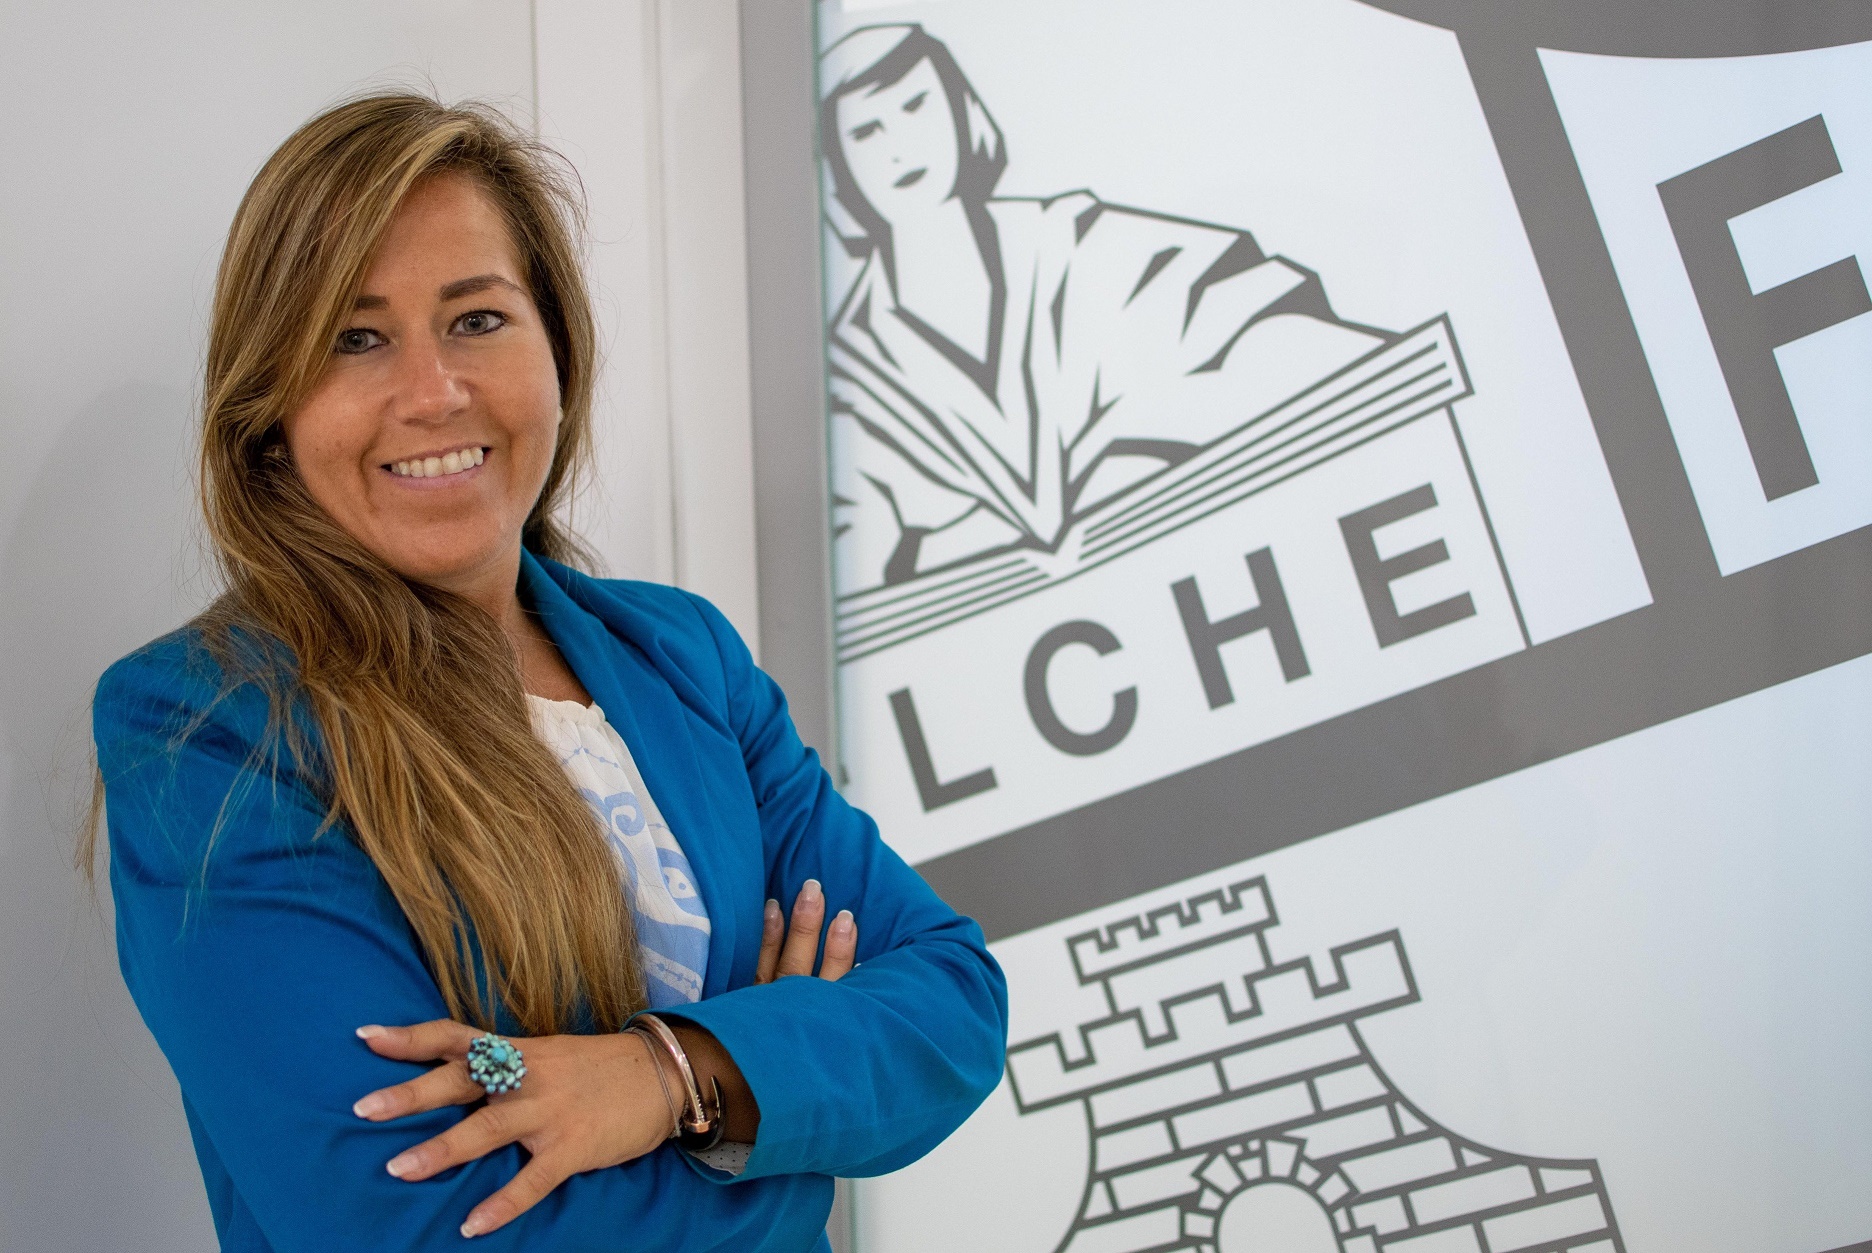 Patricia Rodríguez posa junto al escudo del Elche CF / Sonia Arcos - Elche CF